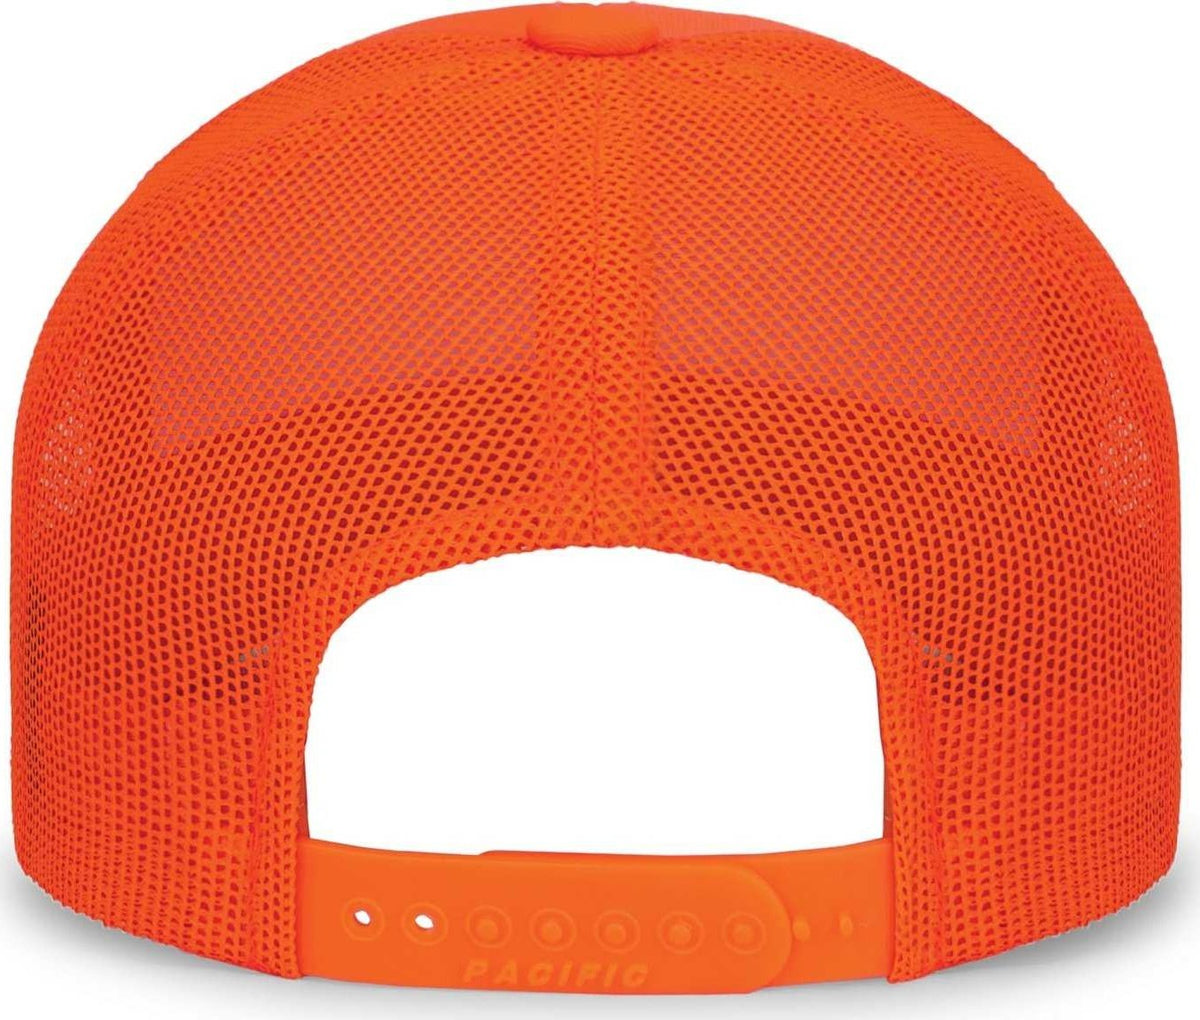 Pacific Headwear 104C Trucker Snapback Cap - Blaze Orange - HIT a Double - 2